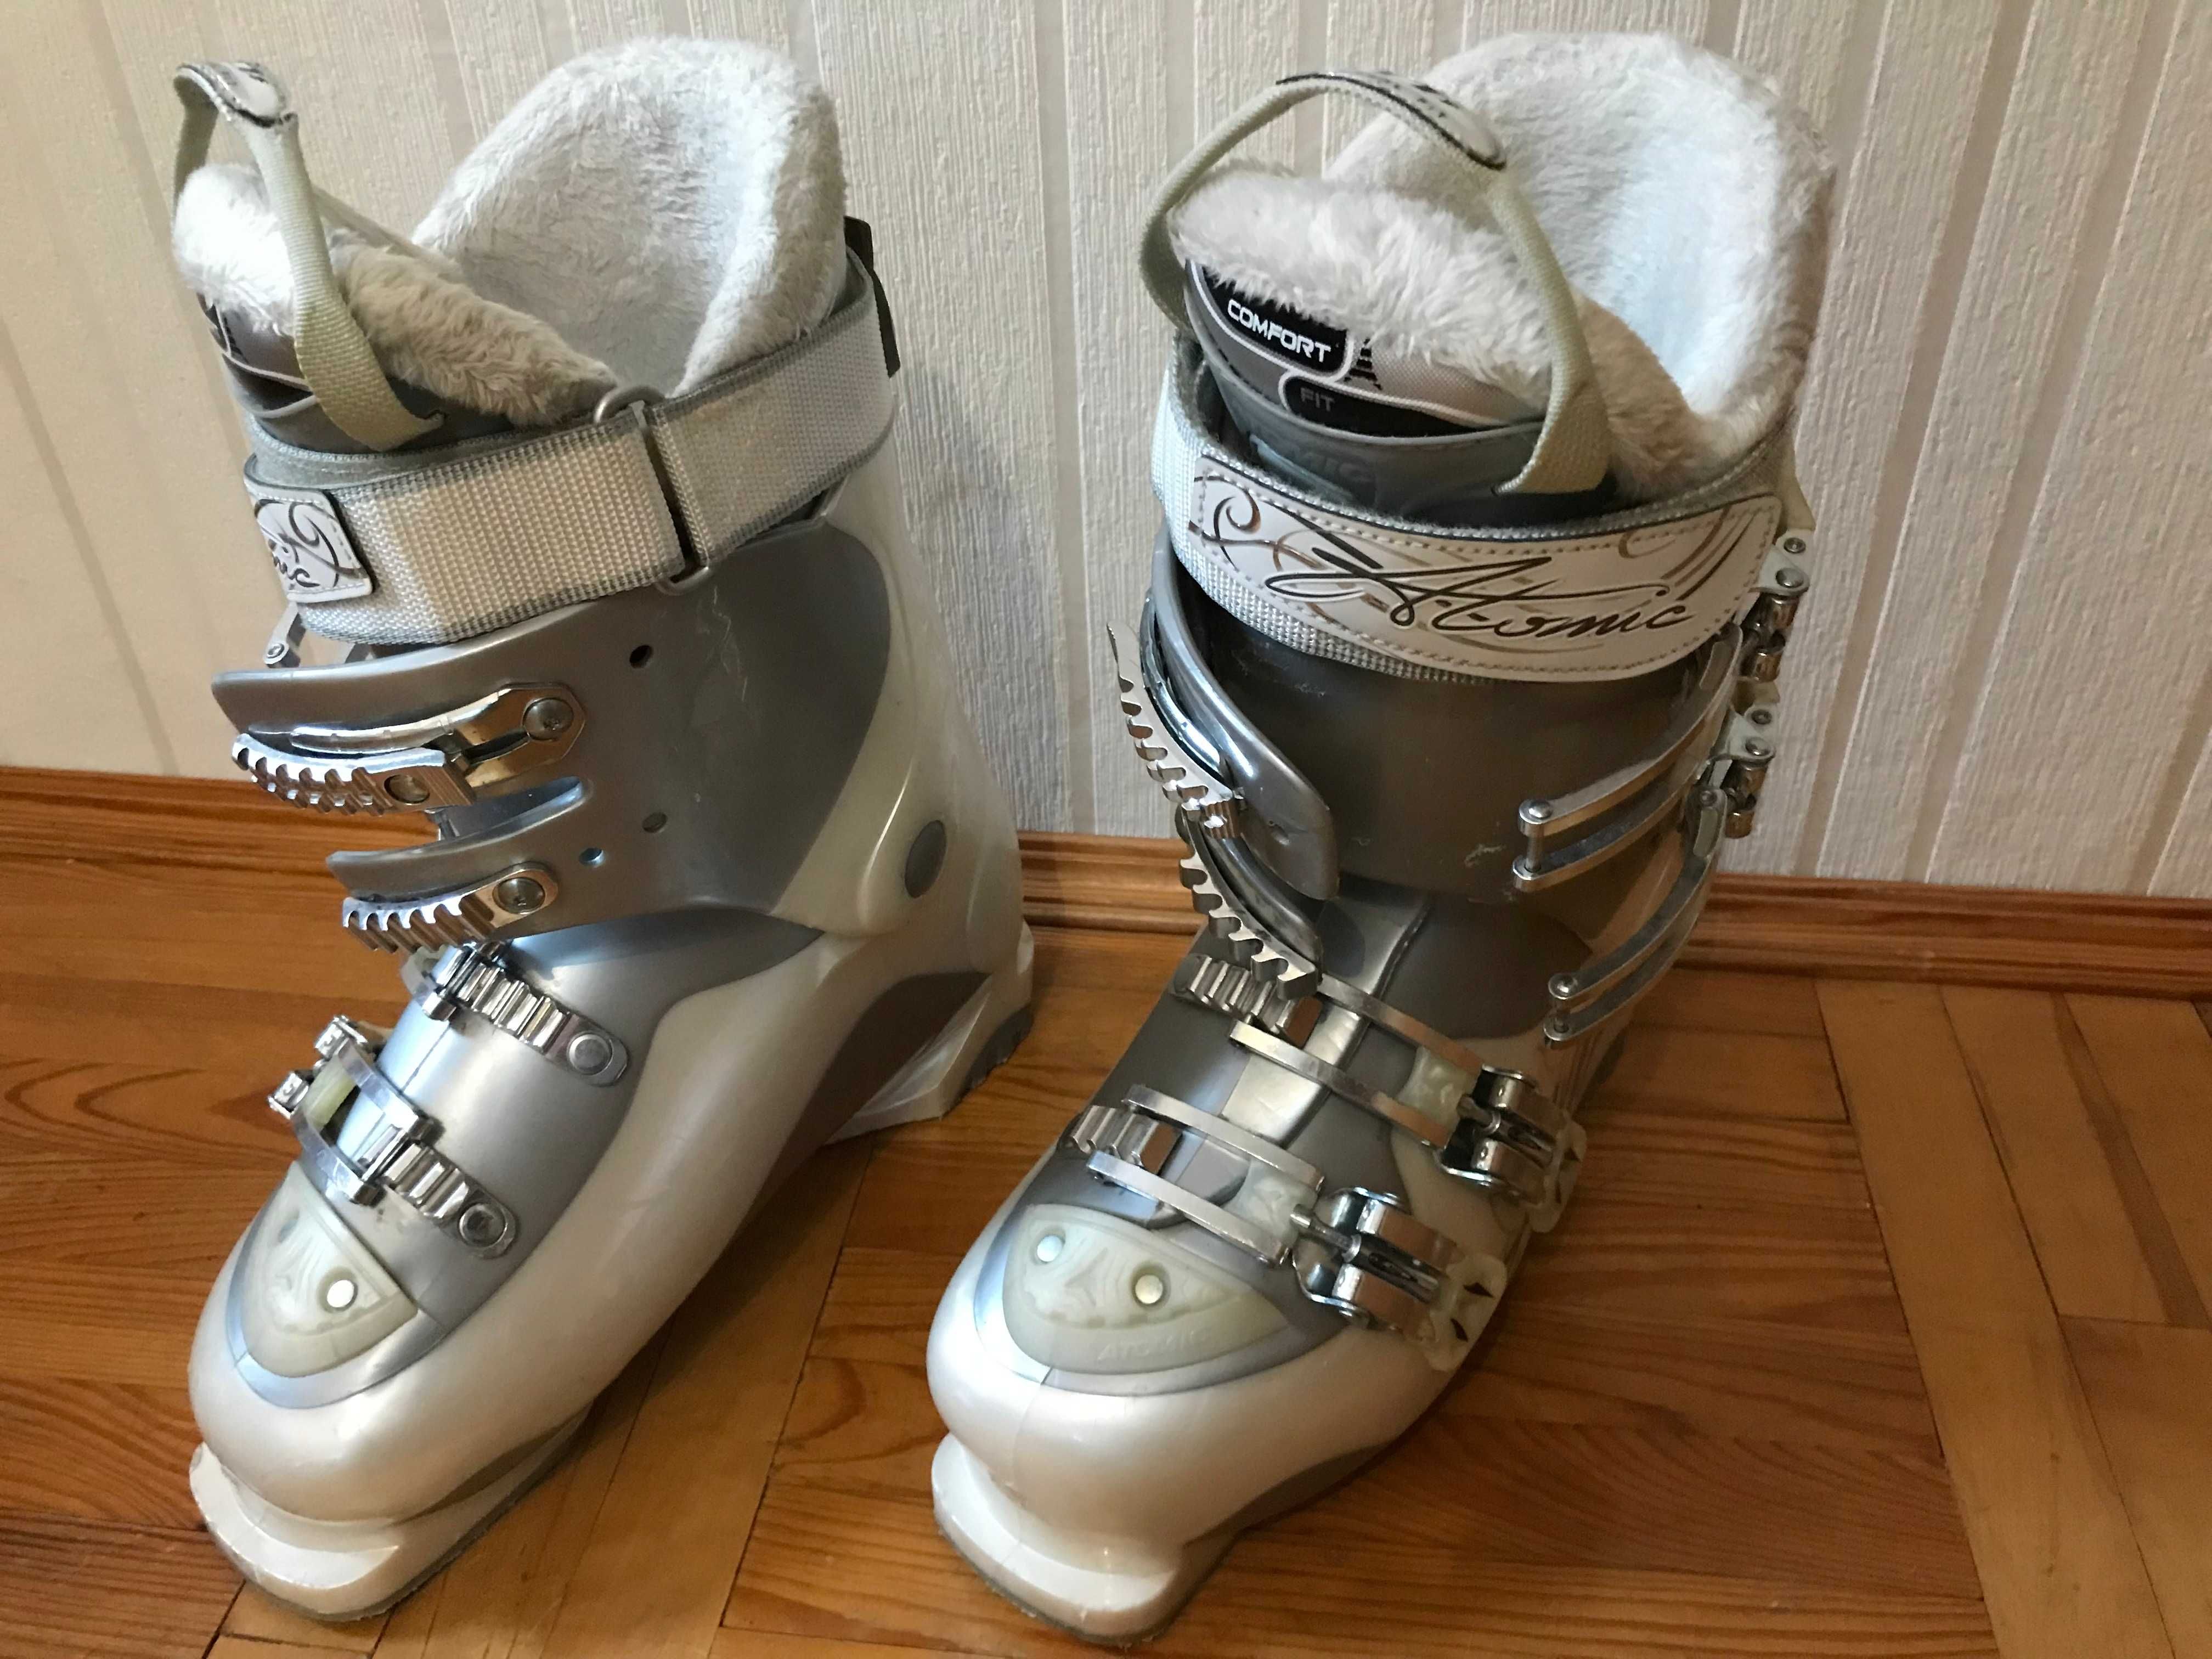 Buty narciarskie Atomic damskie rozmiar 25